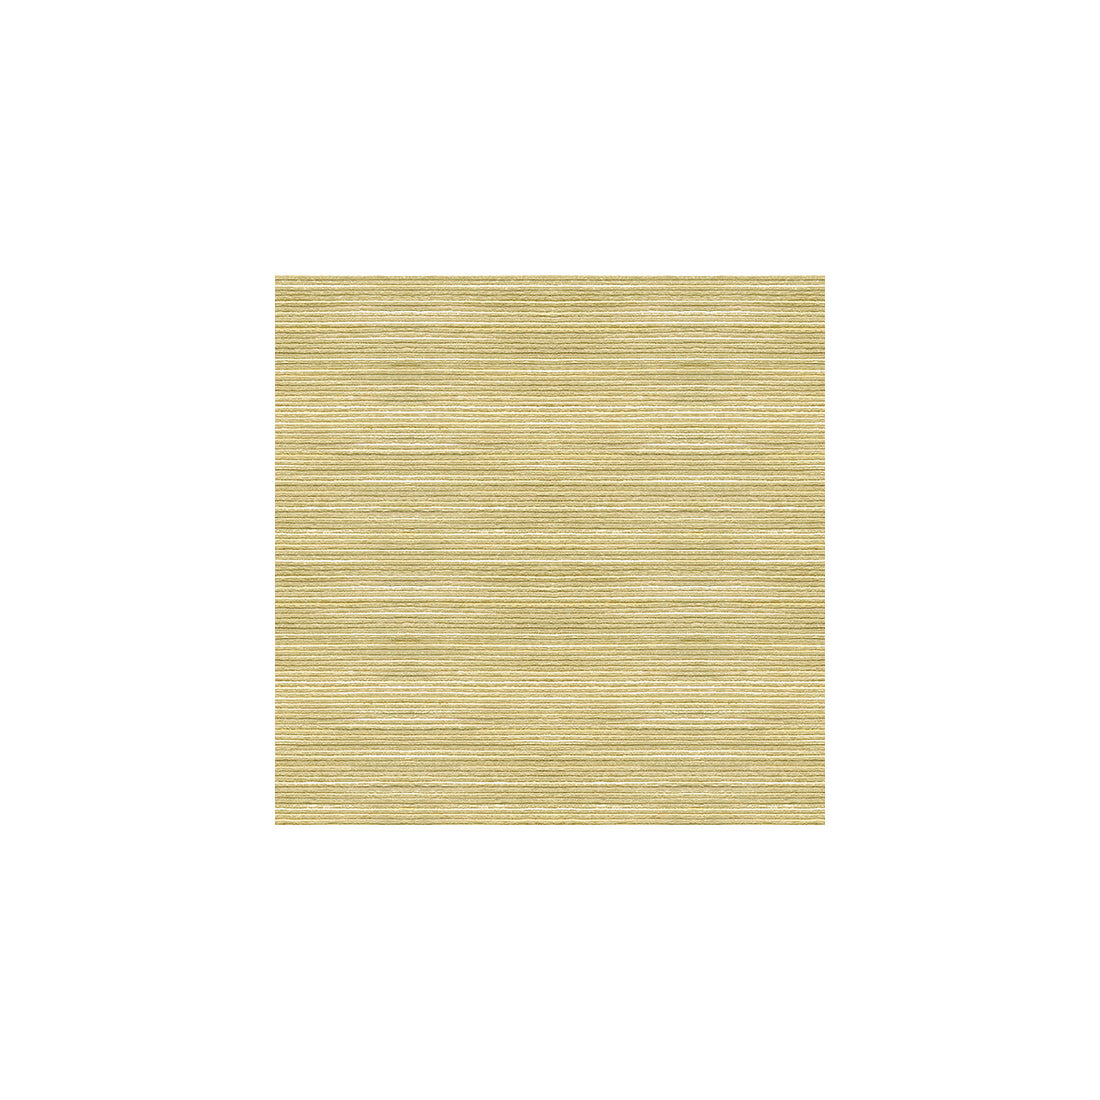 Kravet Basics fabric in 3805-1611 color - pattern 3805.1611.0 - by Kravet Basics